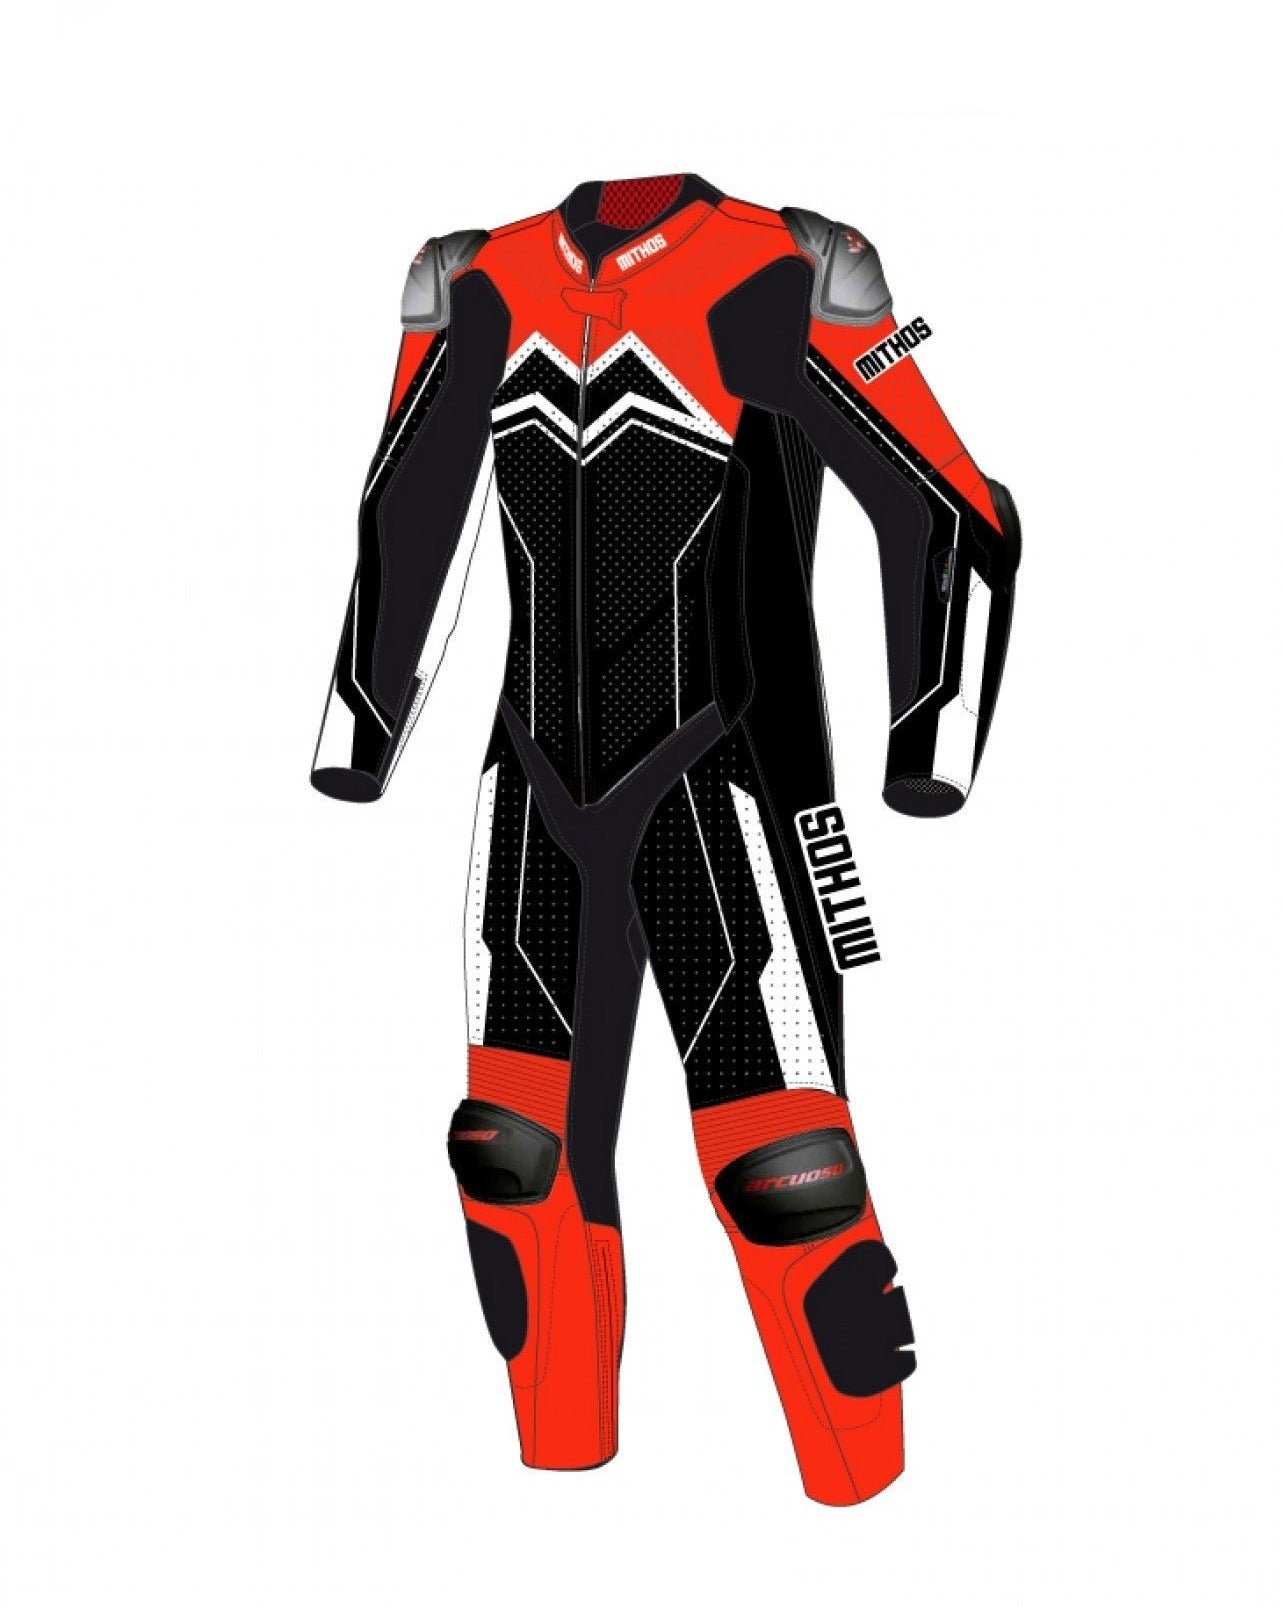 Race suit design service